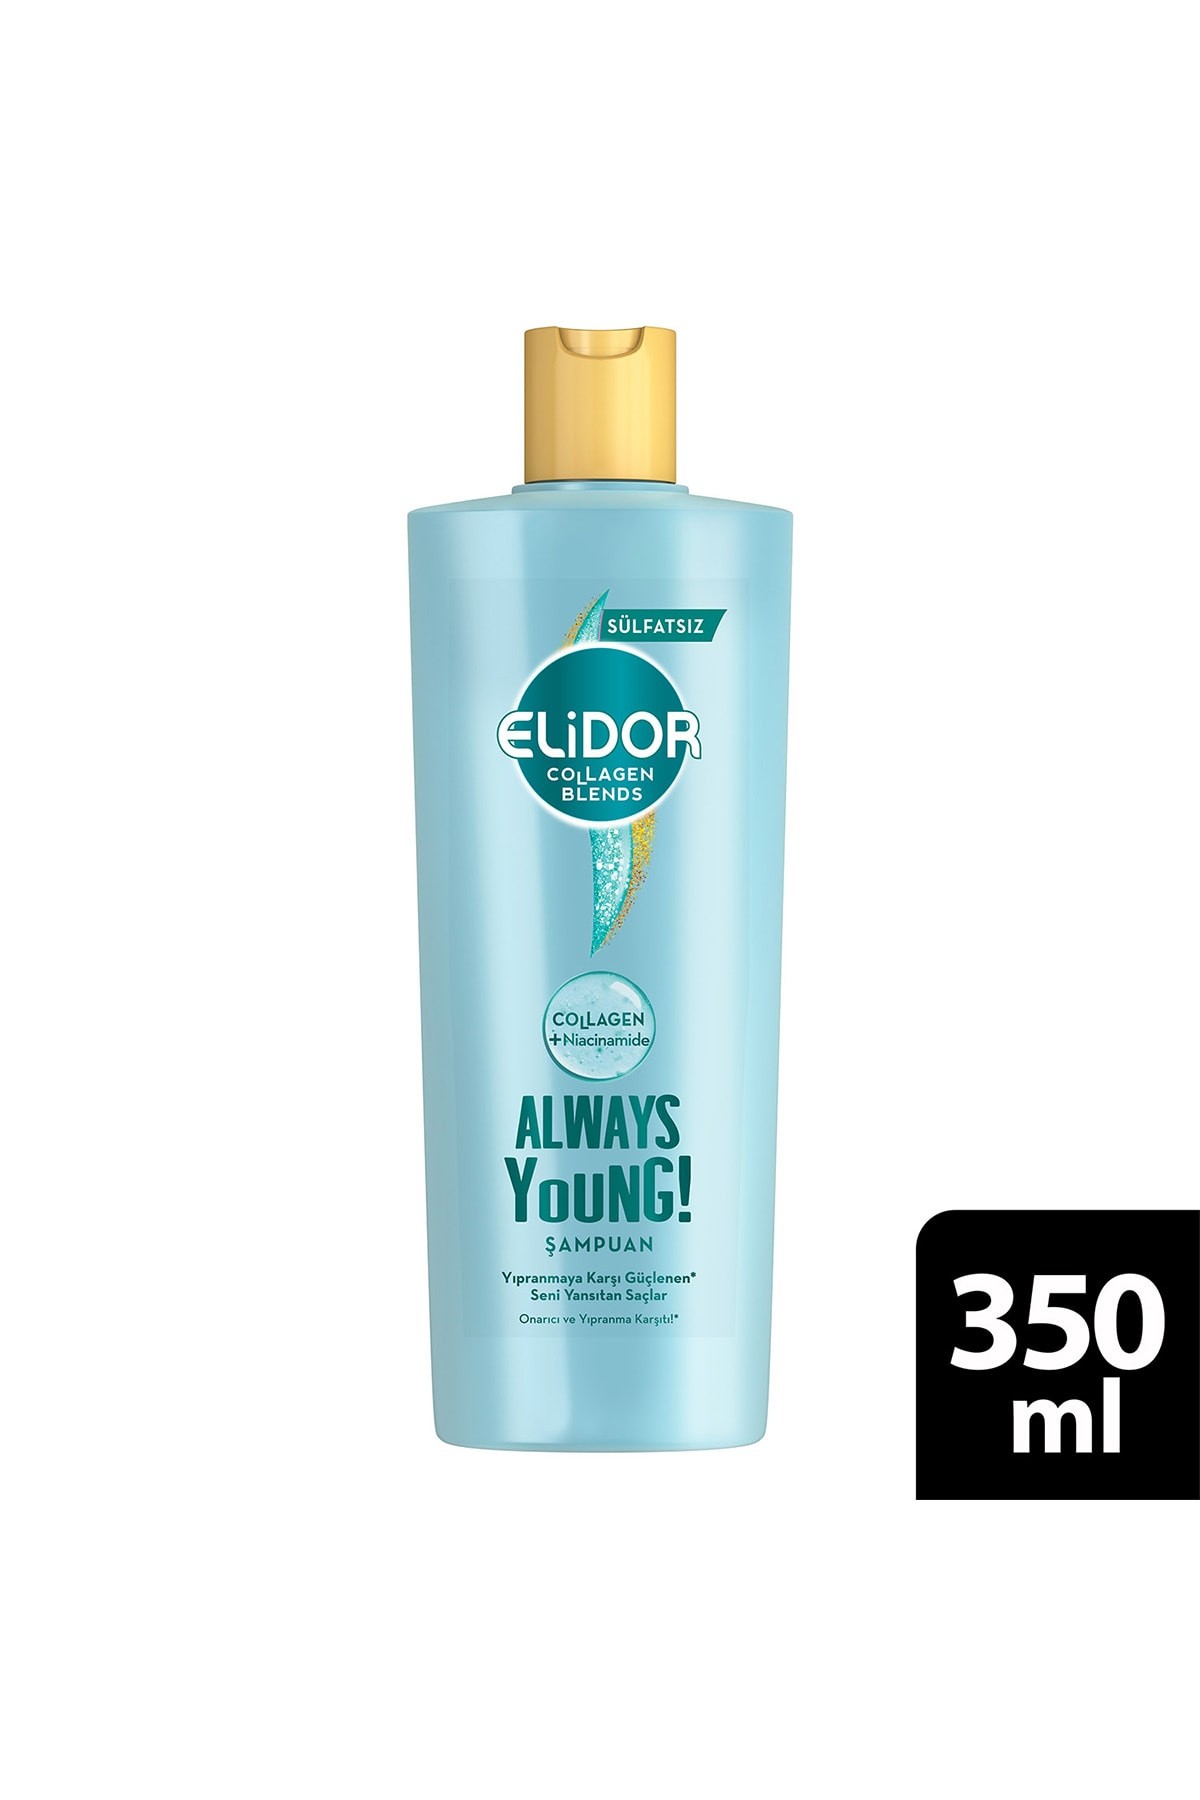 Elidor Collagen Blends Alw ays Young Onarıcı Ve Yıpranma Karşıtı Şampuan 350 m